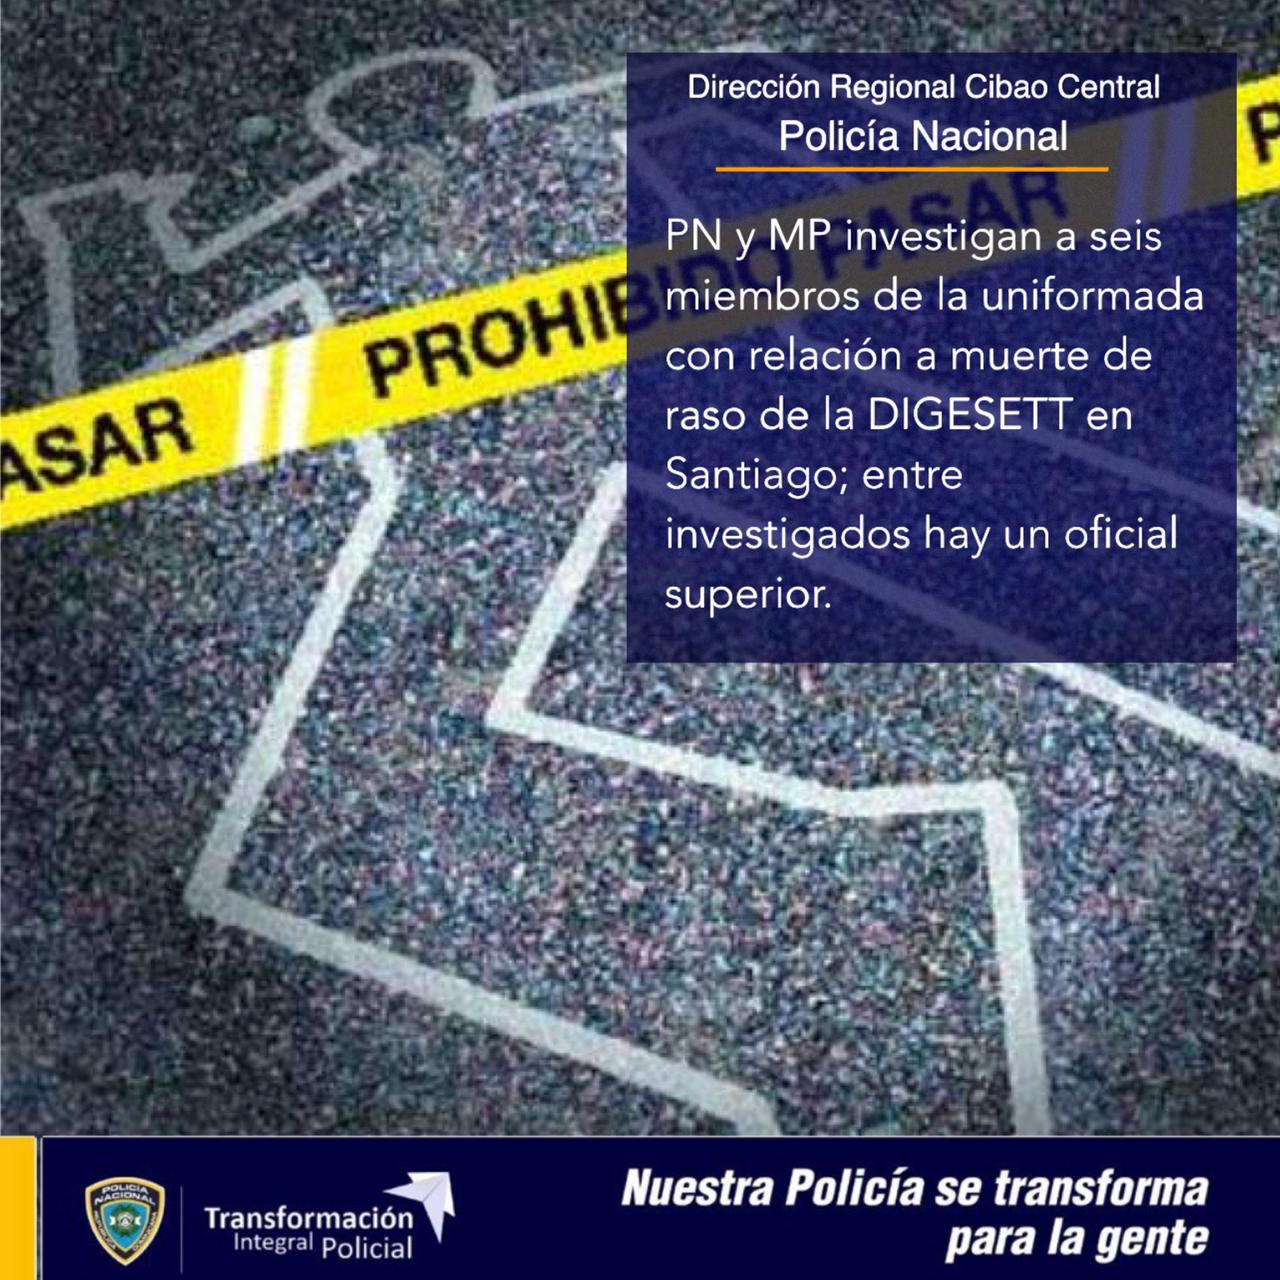 PN y MP investigan a seis miembros de la uniformada con relación muerte raso DIGESETT en Santiago; entre los investigados hay un oficial superior.